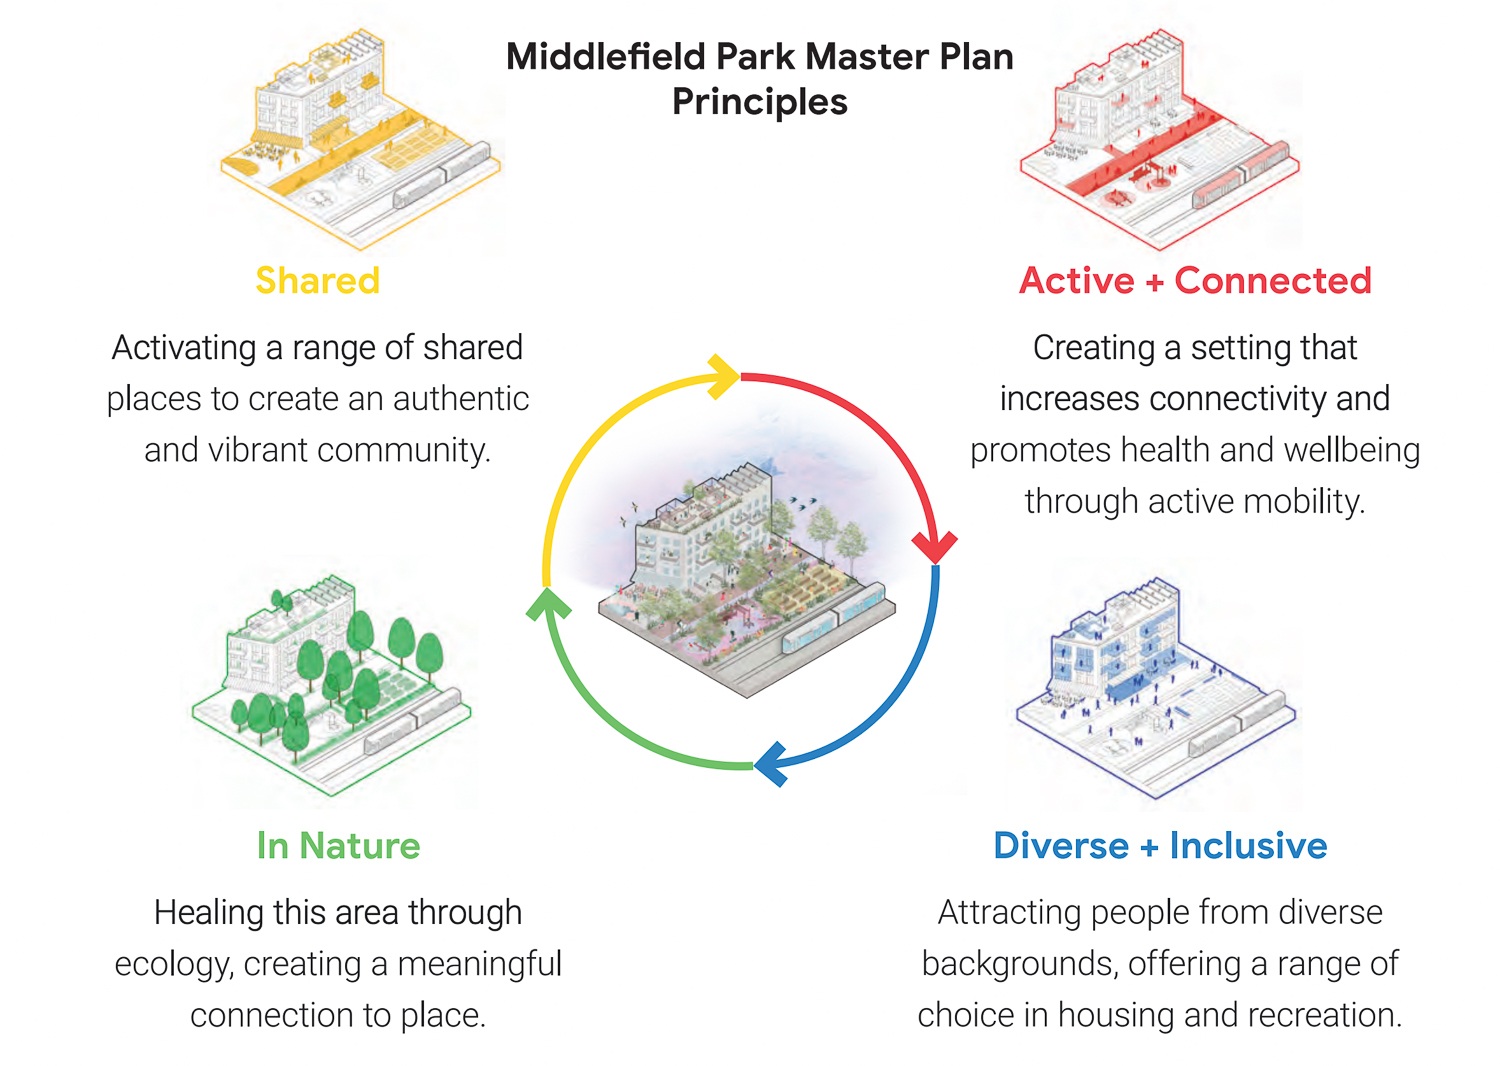 Middlefield Park master planning design inspiration, illustration courtesy Google